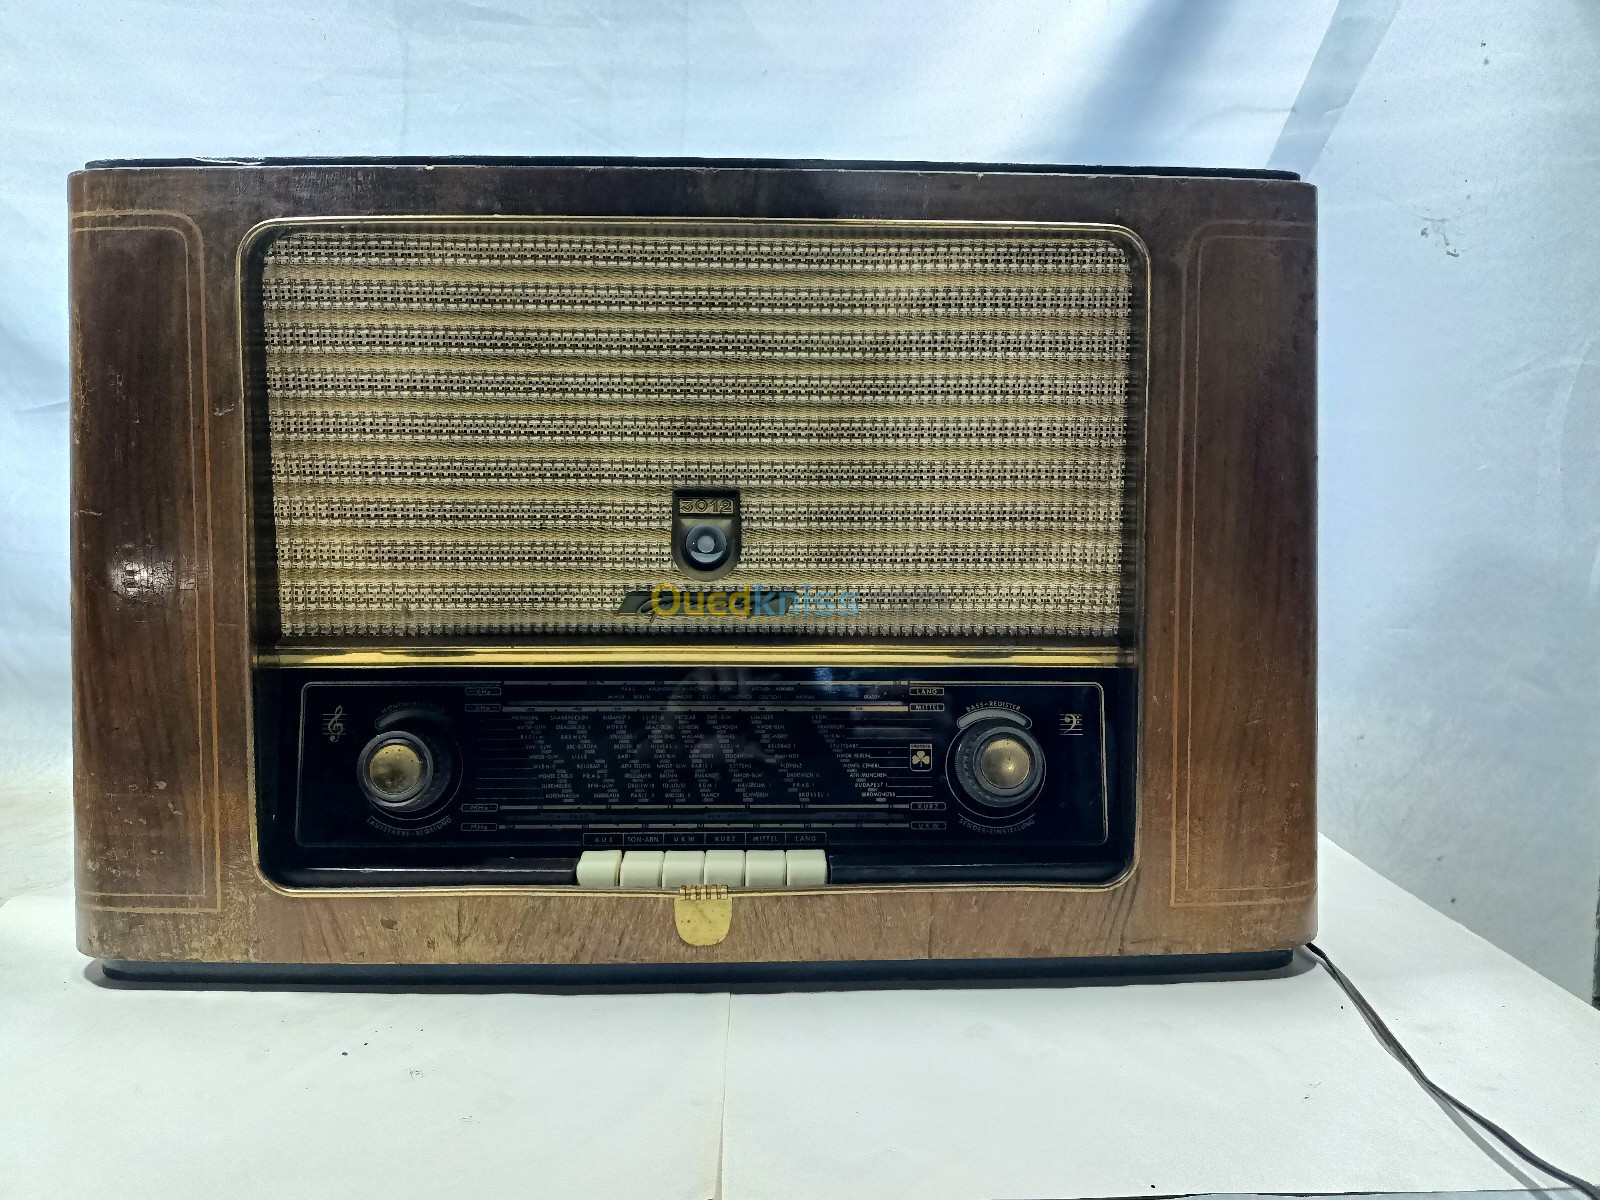 Radio Tsf GRUNDIG FM made in Germany 1953